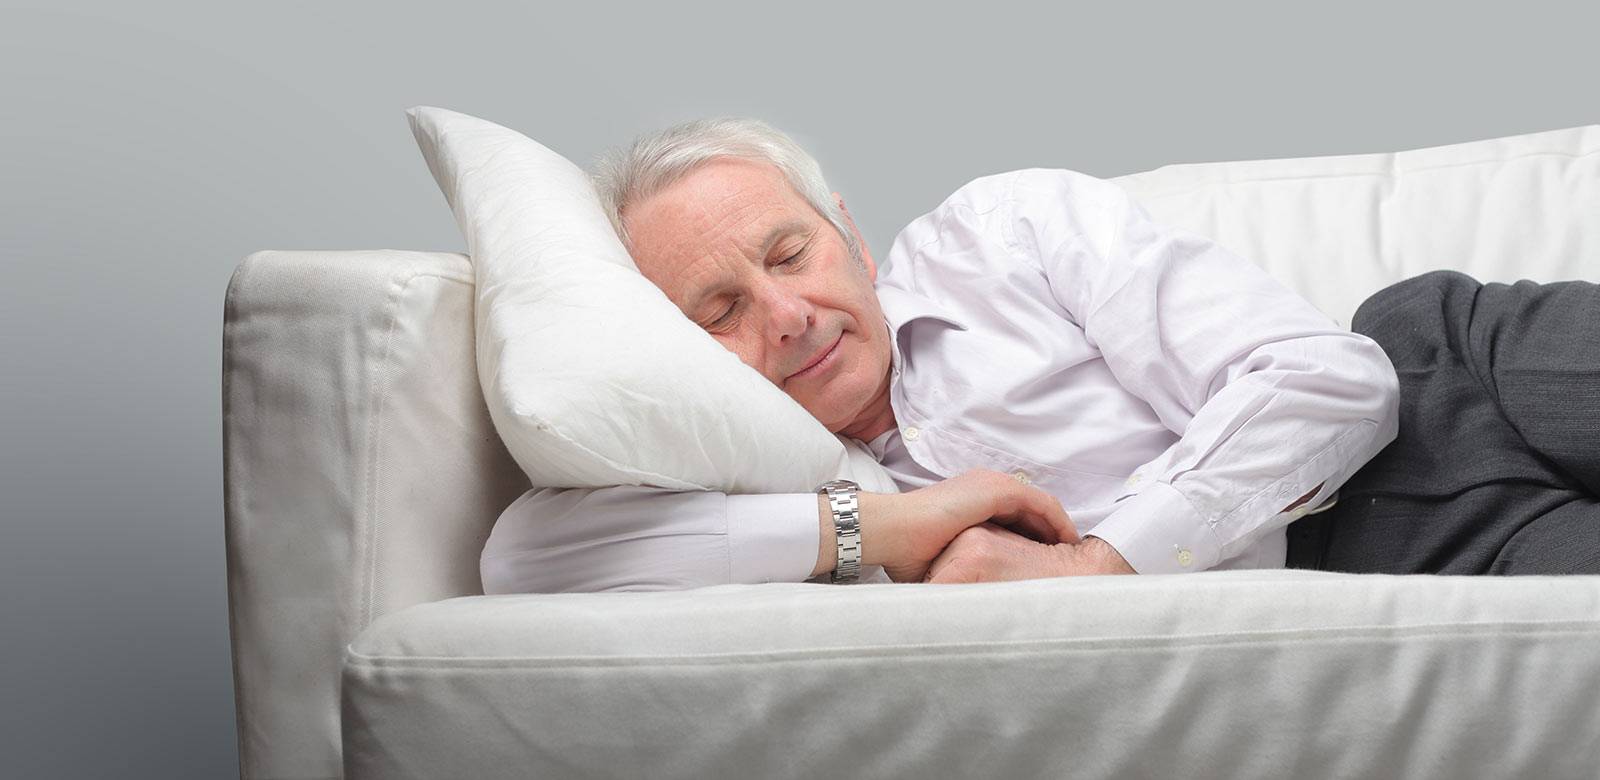 Препараты для улучшения сна: рецептурные и безрецептурные снотворные средства